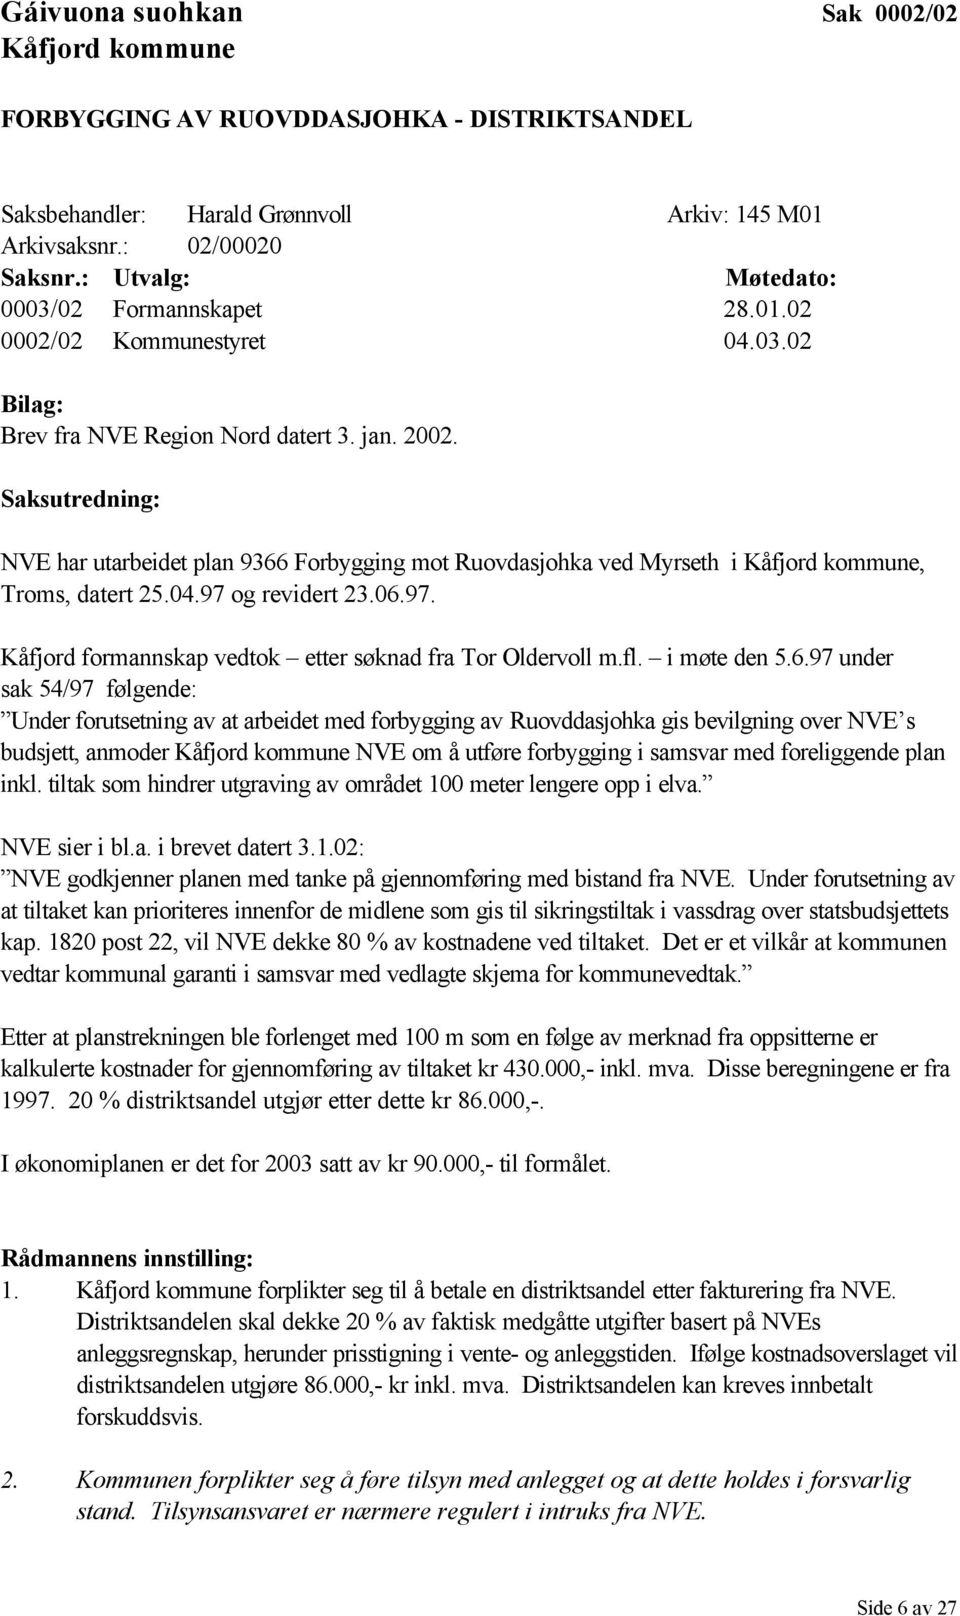 Saksutredning: NVE har utarbeidet plan 9366 Forbygging mot Ruovdasjohka ved Myrseth i Kåfjord kommune, Troms, datert 25.04.97 og revidert 23.06.97. Kåfjord formannskap vedtok etter søknad fra Tor Oldervoll m.